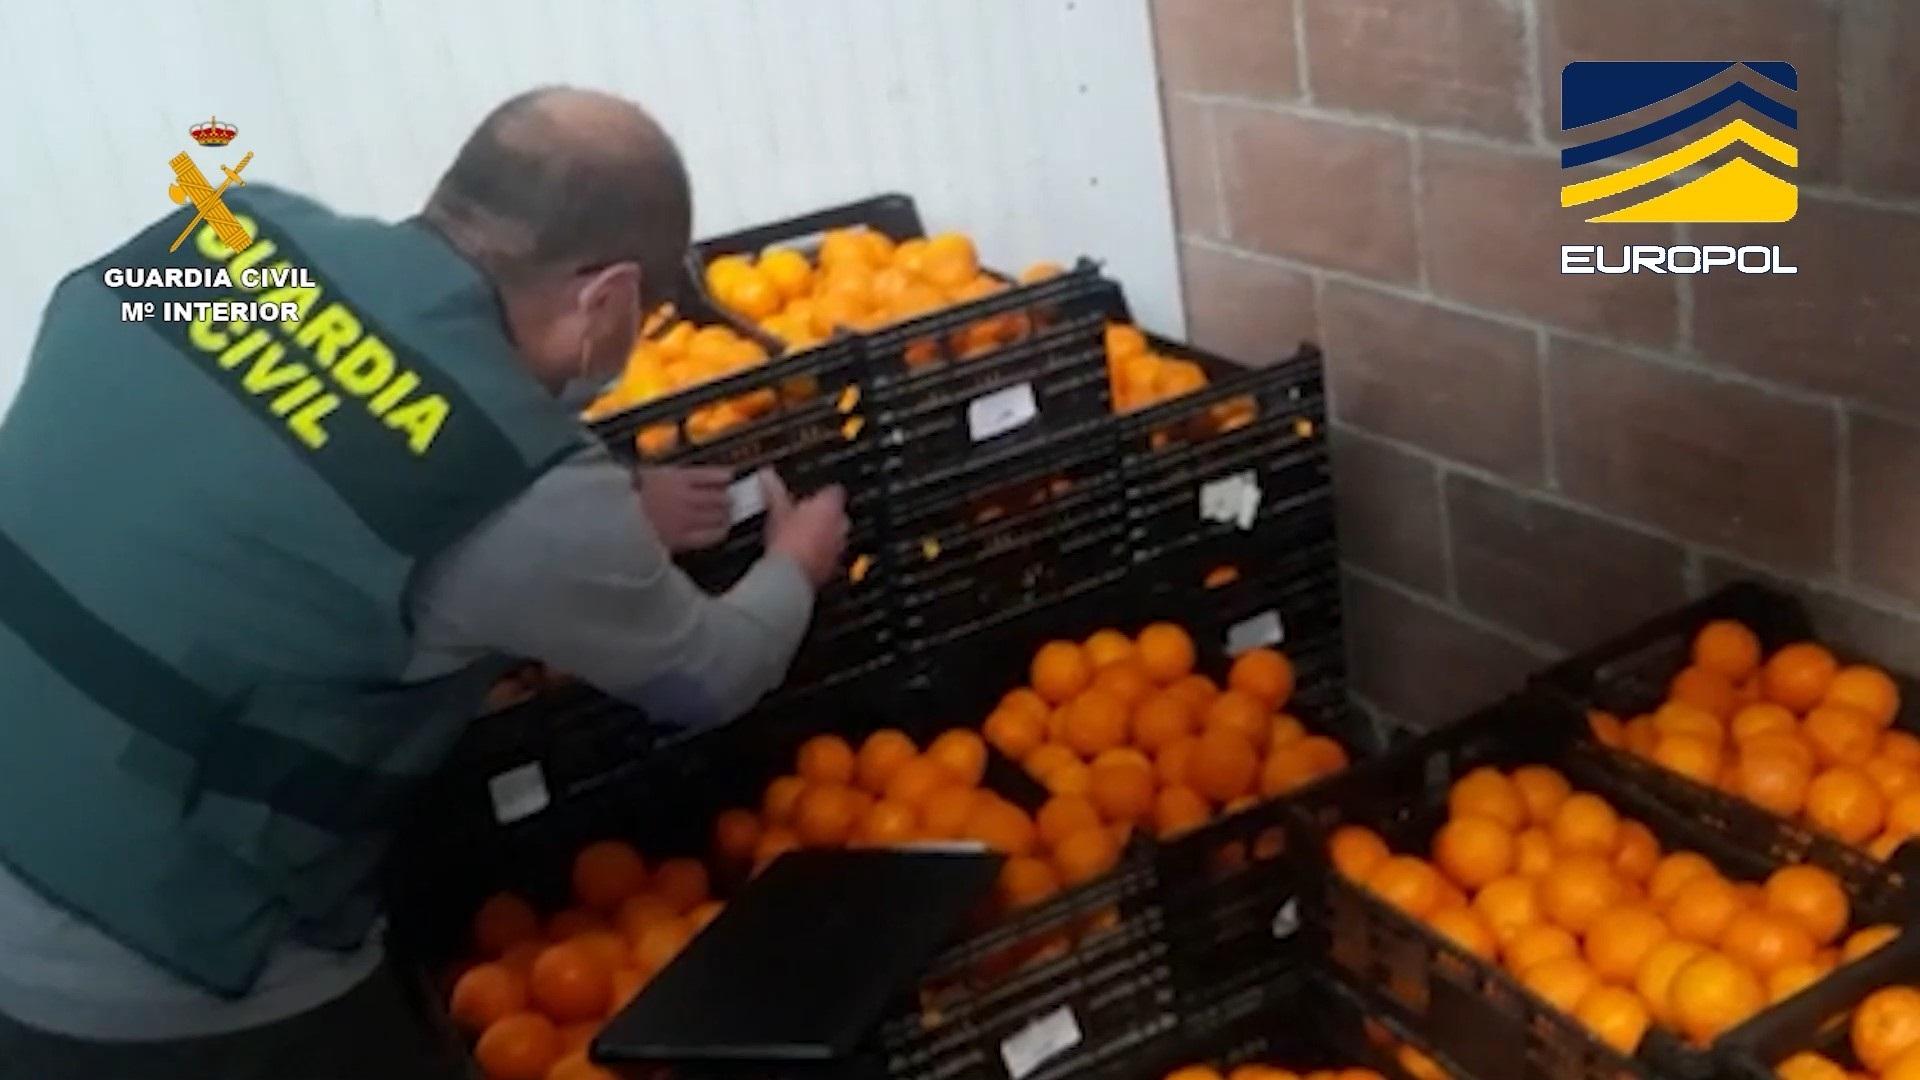 Agente de la guardia civil revisando cajas de naranjas